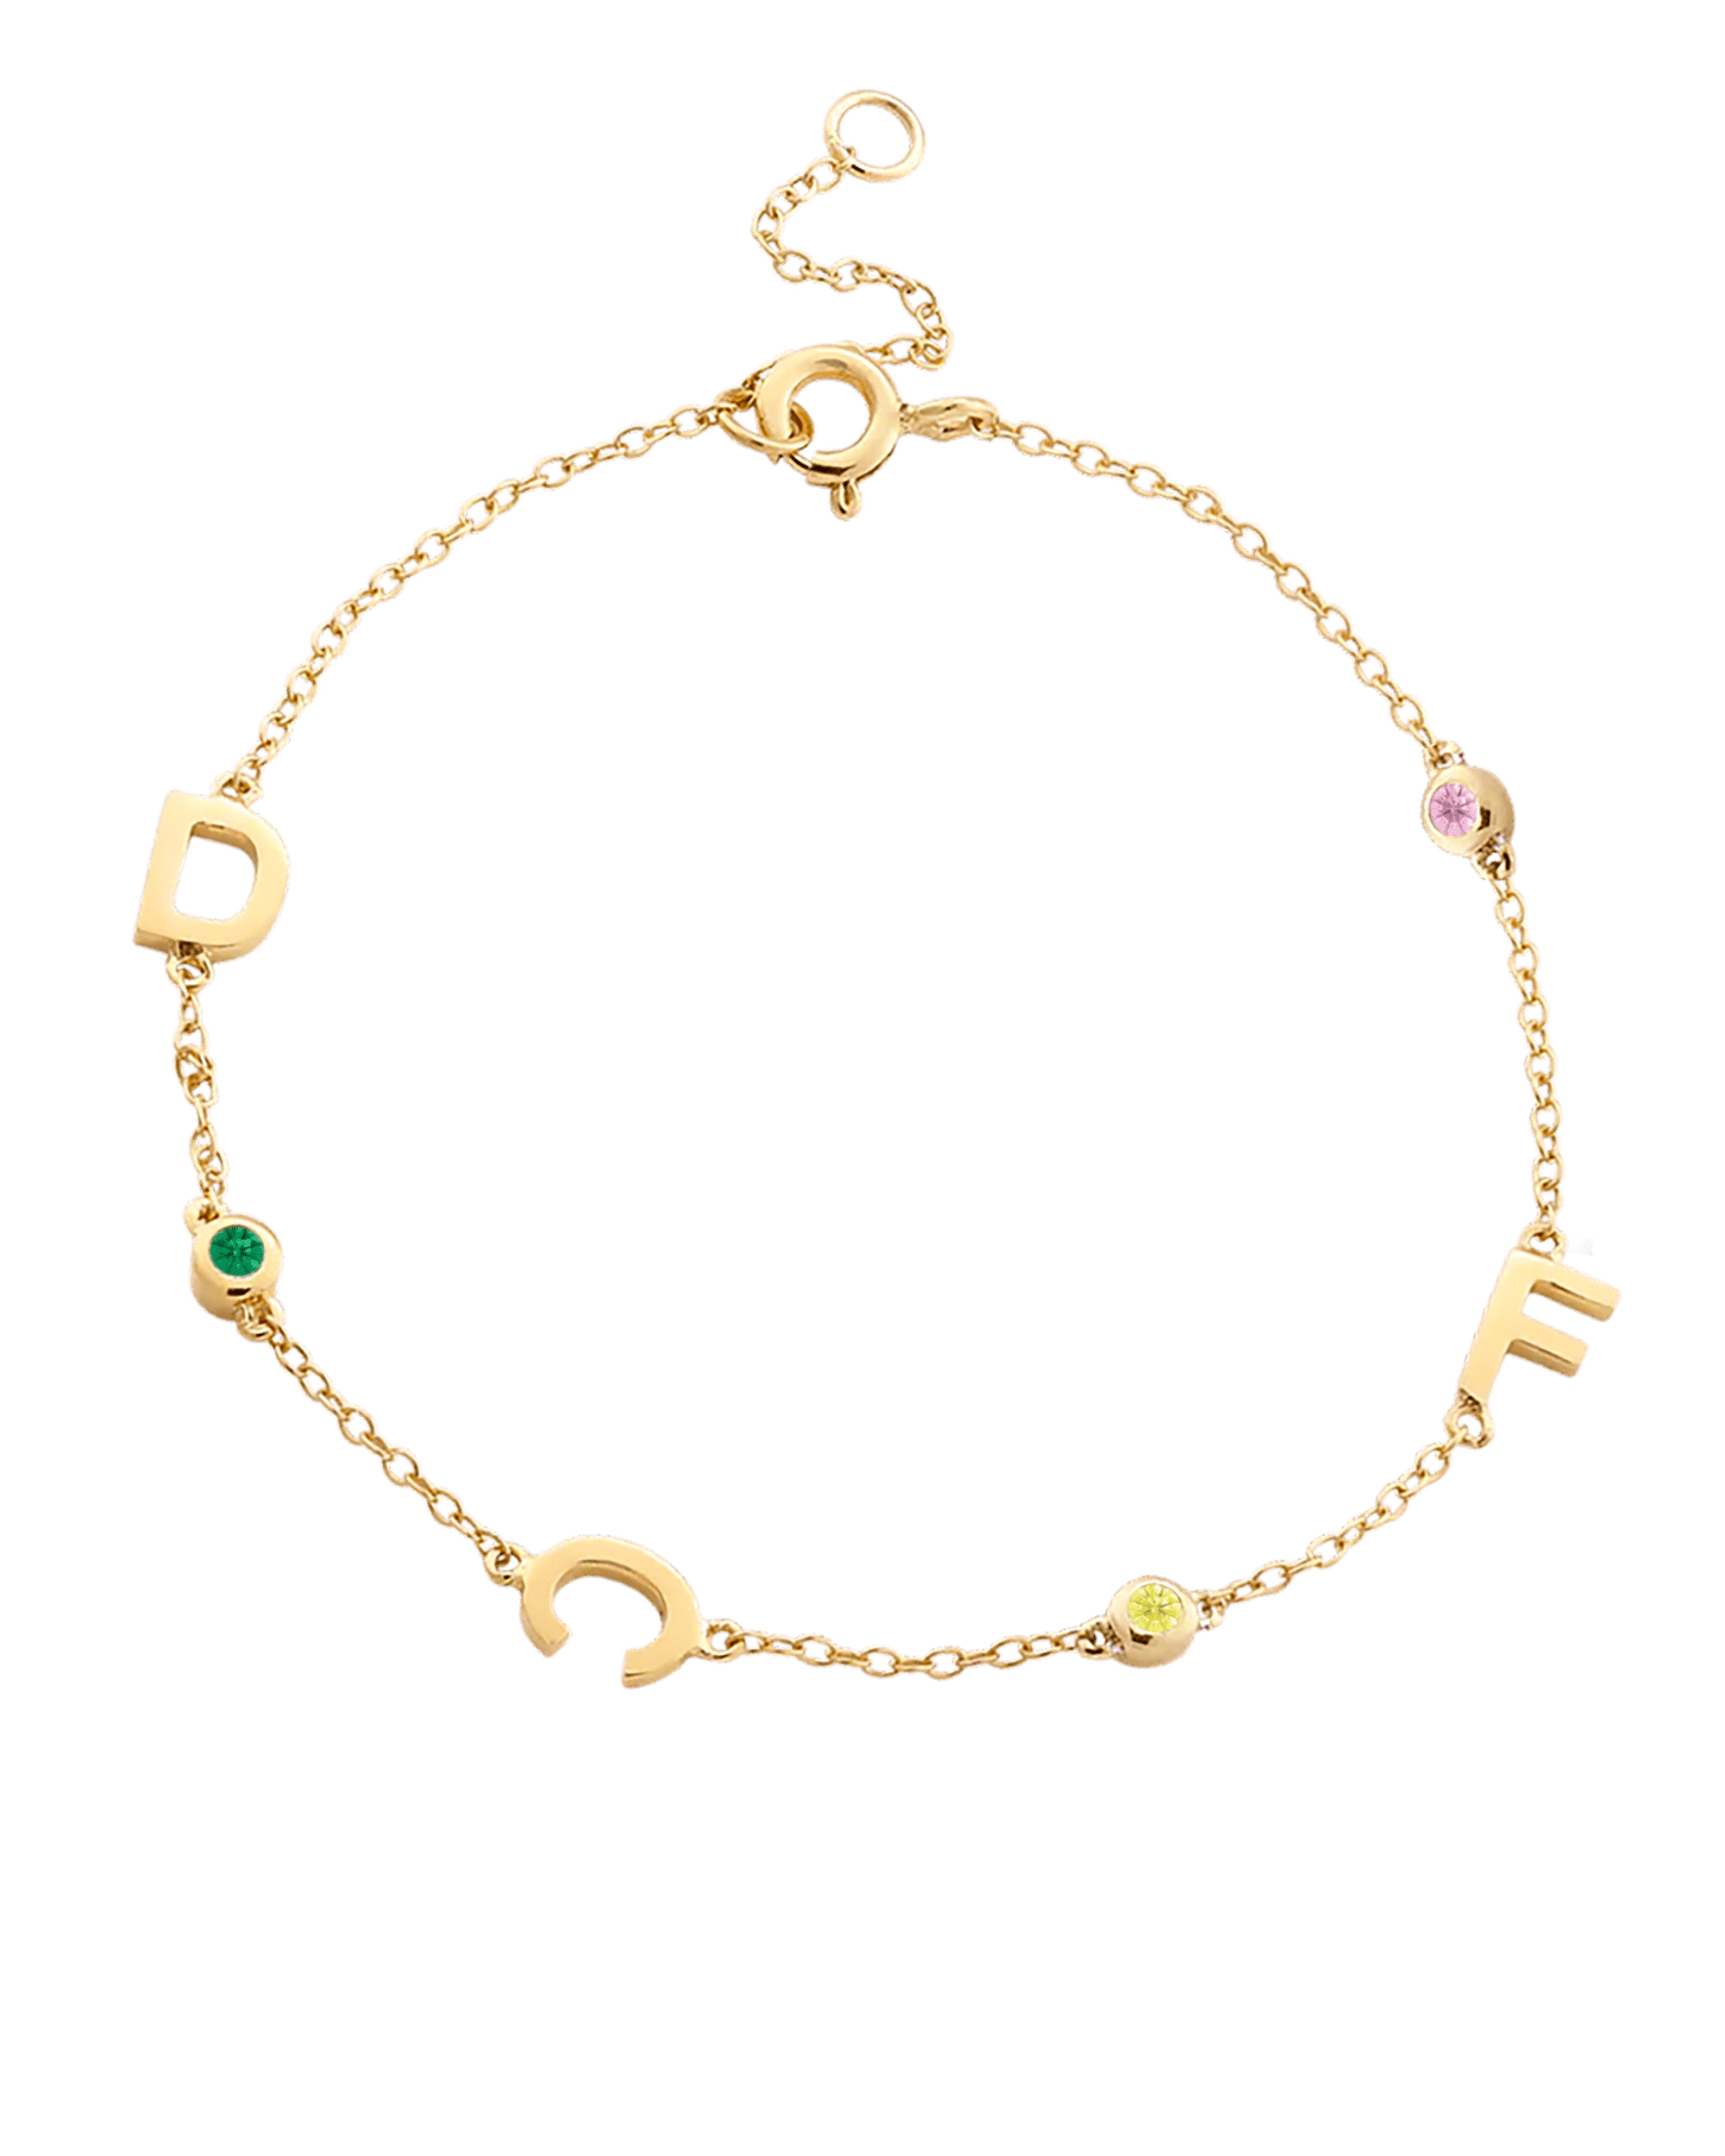 Bracelet Initiale(s) Pierres Précieuses - Or Jaune Plaqué 18 carats Bracelets magal-dev 1 Inititiale 6"-7" (S-M wrist) 